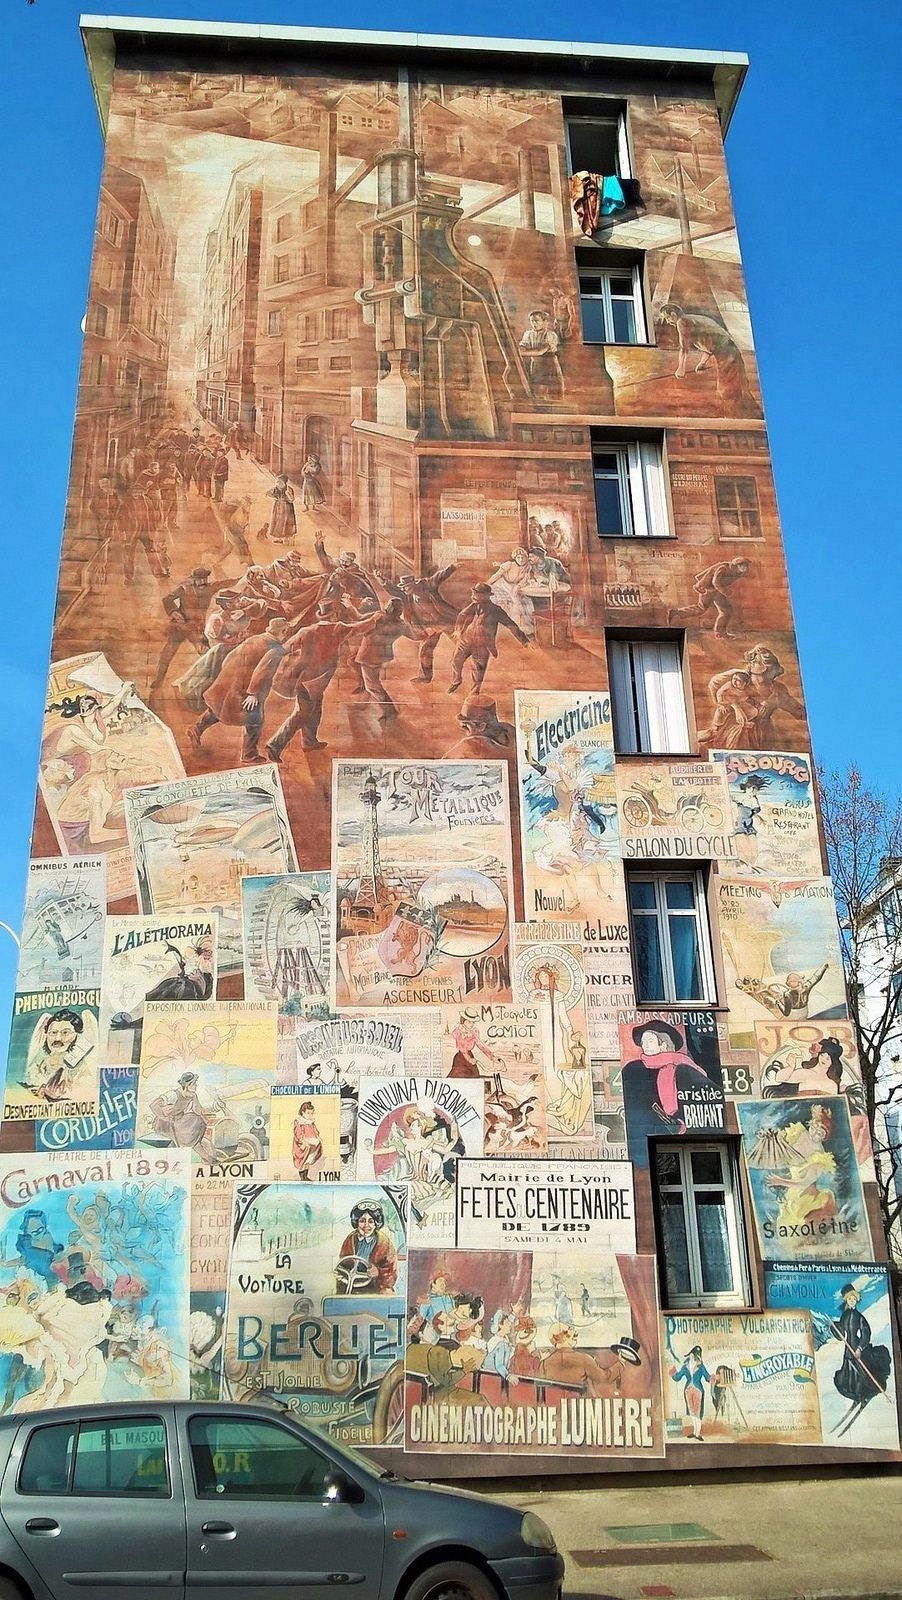 شهر نقاشی های دیواری | جاذبه های گردشگری و هنری فرانسه لیون